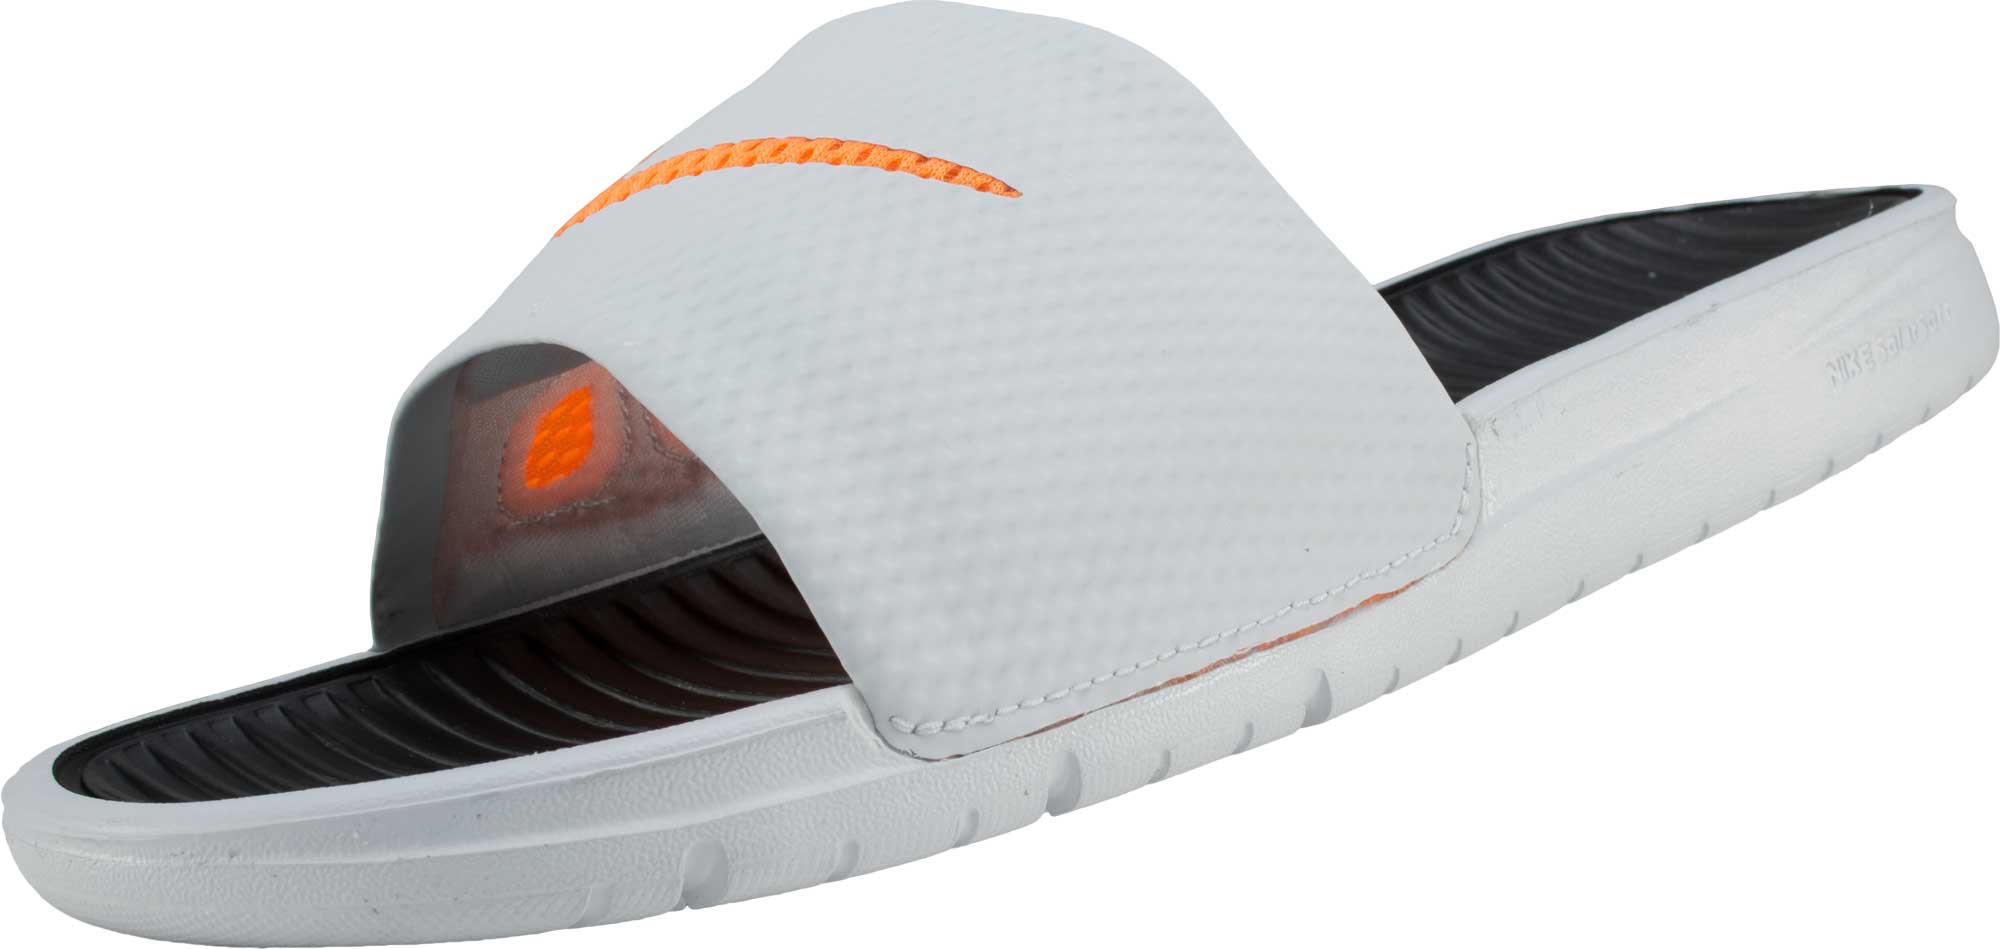 benassi solarsoft slide sandal